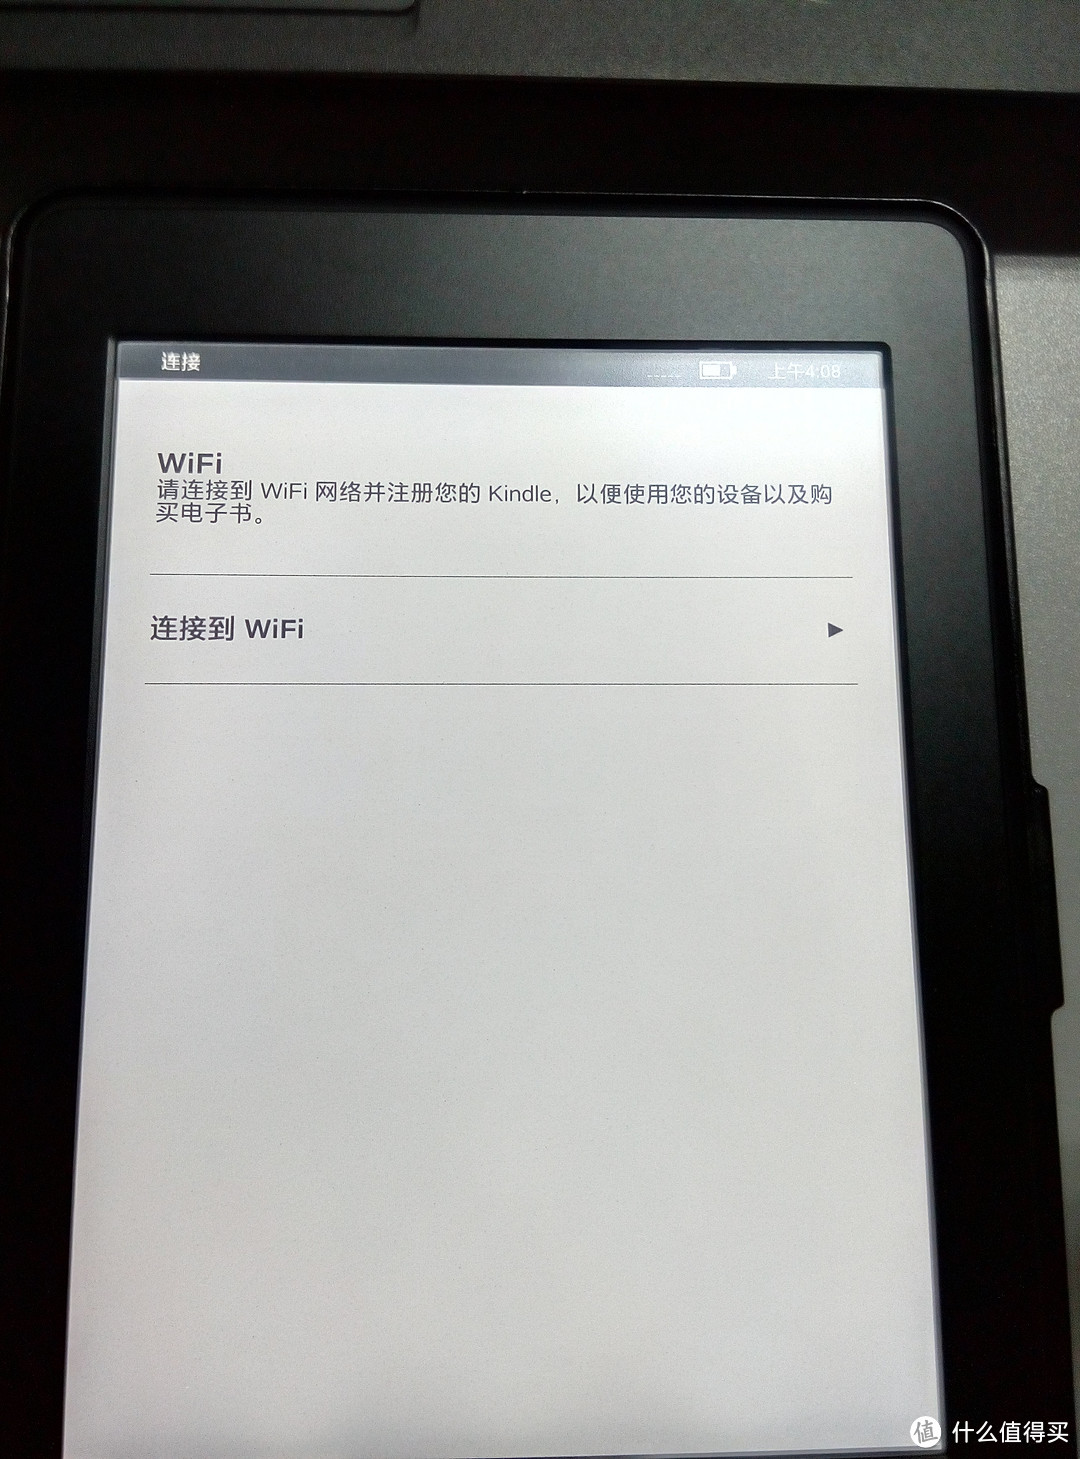 亚马逊 Kindle paperwhite3 简单开箱&初步设置